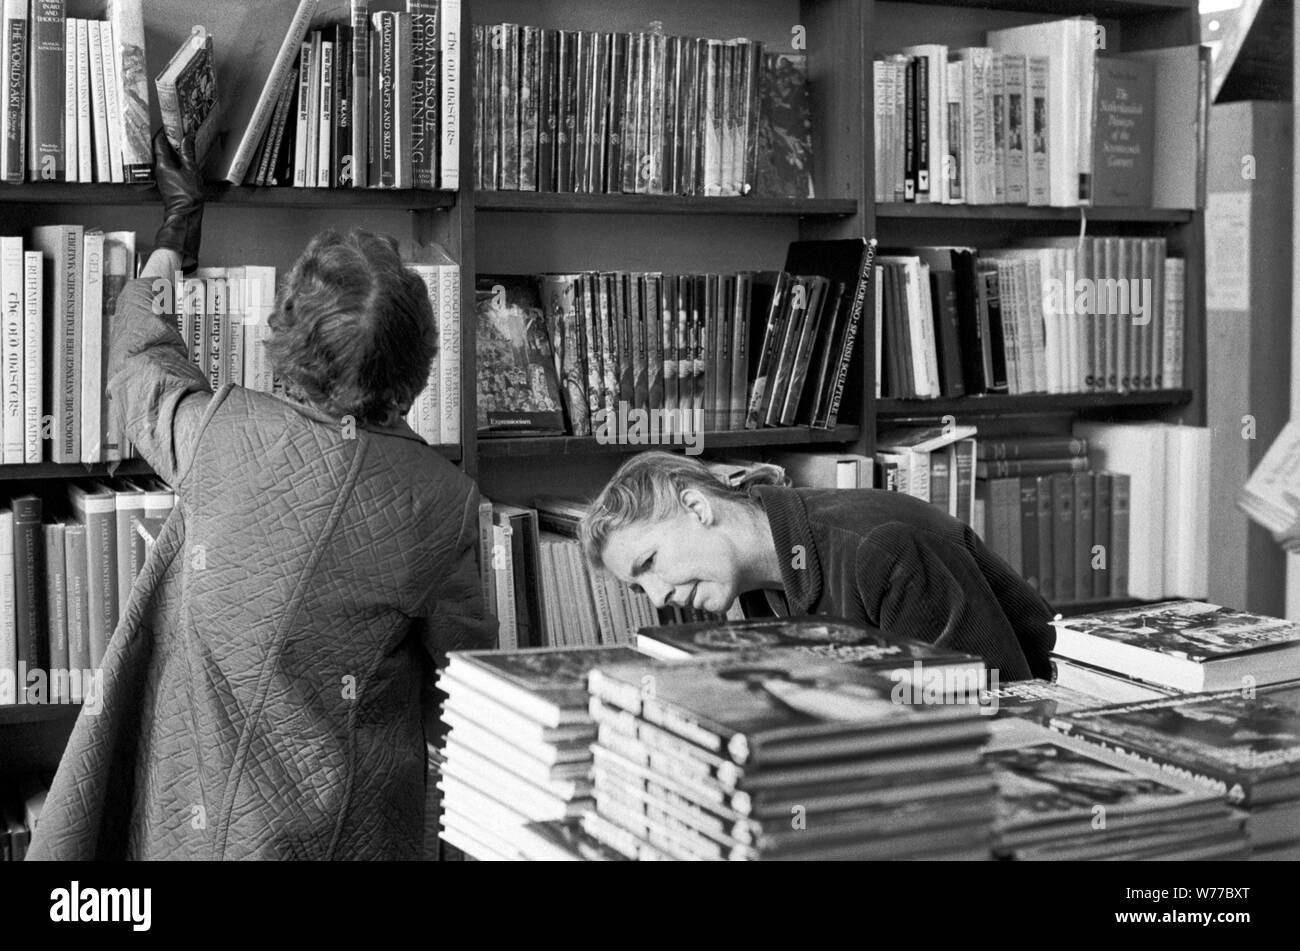 1970 shopping Inghilterra. Donne in una libreria, la gente che naviga selezionando libri affollato occupato Londra libri negozi 70s UK HOMER SYKES Foto Stock